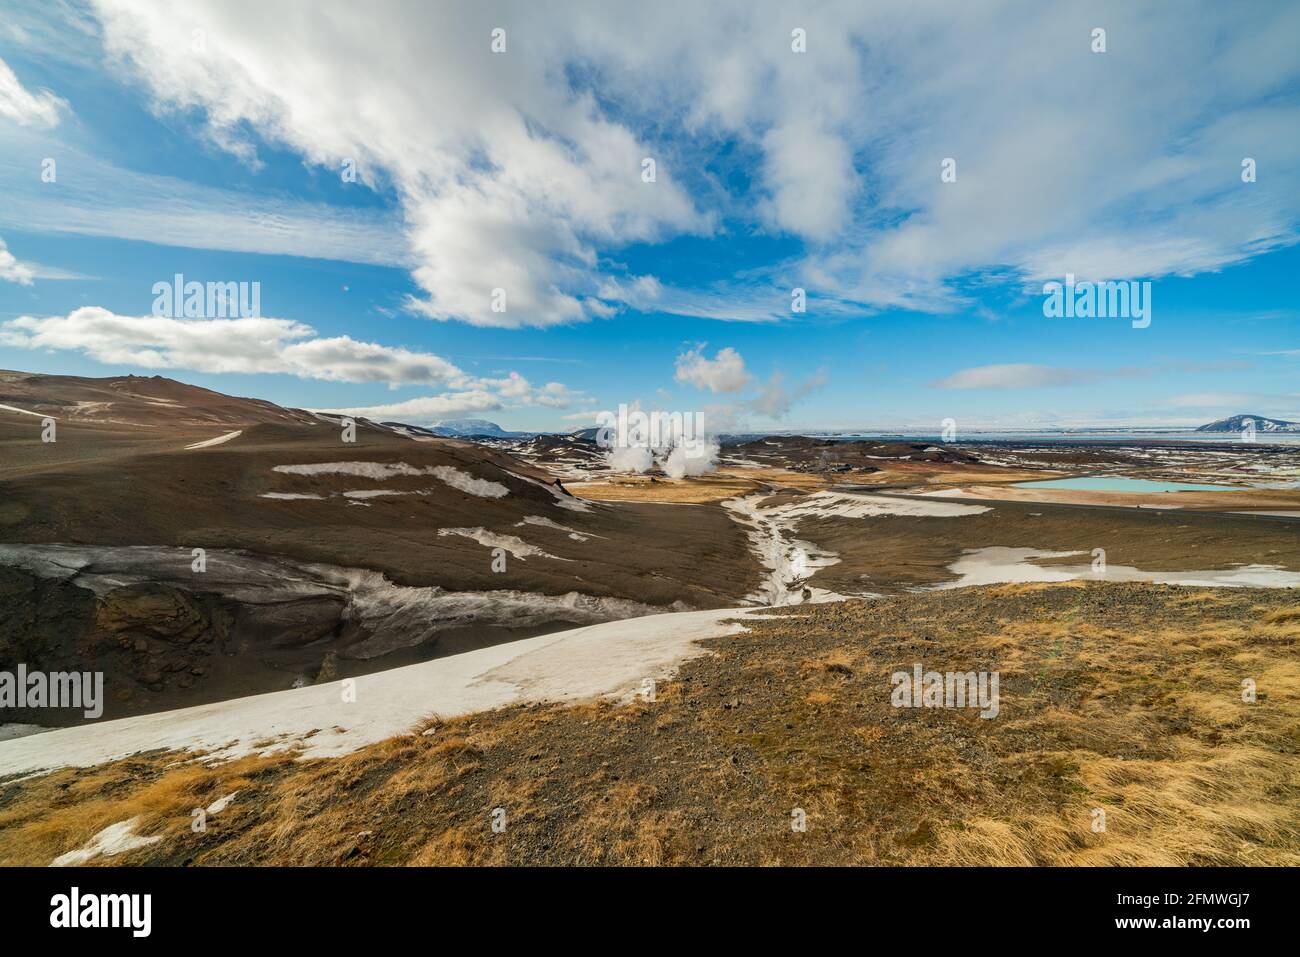 Namafjall Hverir Geothermiegebiet in Island. Atemberaubende Landschaft von Schwefel Tal mit rauchenden Fumarolen und blau bewölkten Himmel, Reise Hintergrund Stockfoto